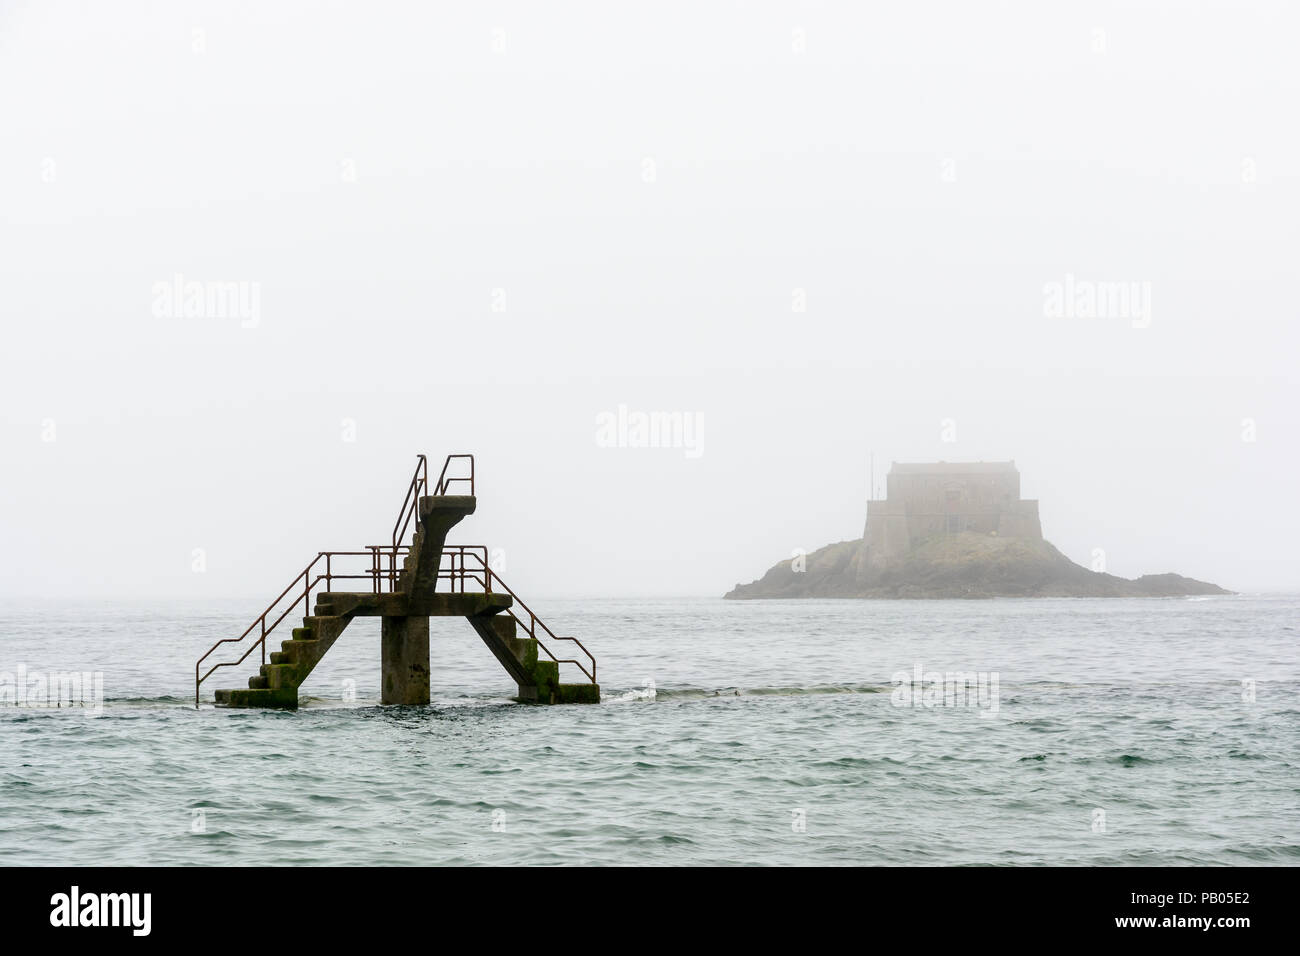 La piattaforma di immersione delle maree piscina di Bon Secours beach, a Saint-malo, Francia, da un nebbioso giorno con il Petit essere isola in background. Foto Stock